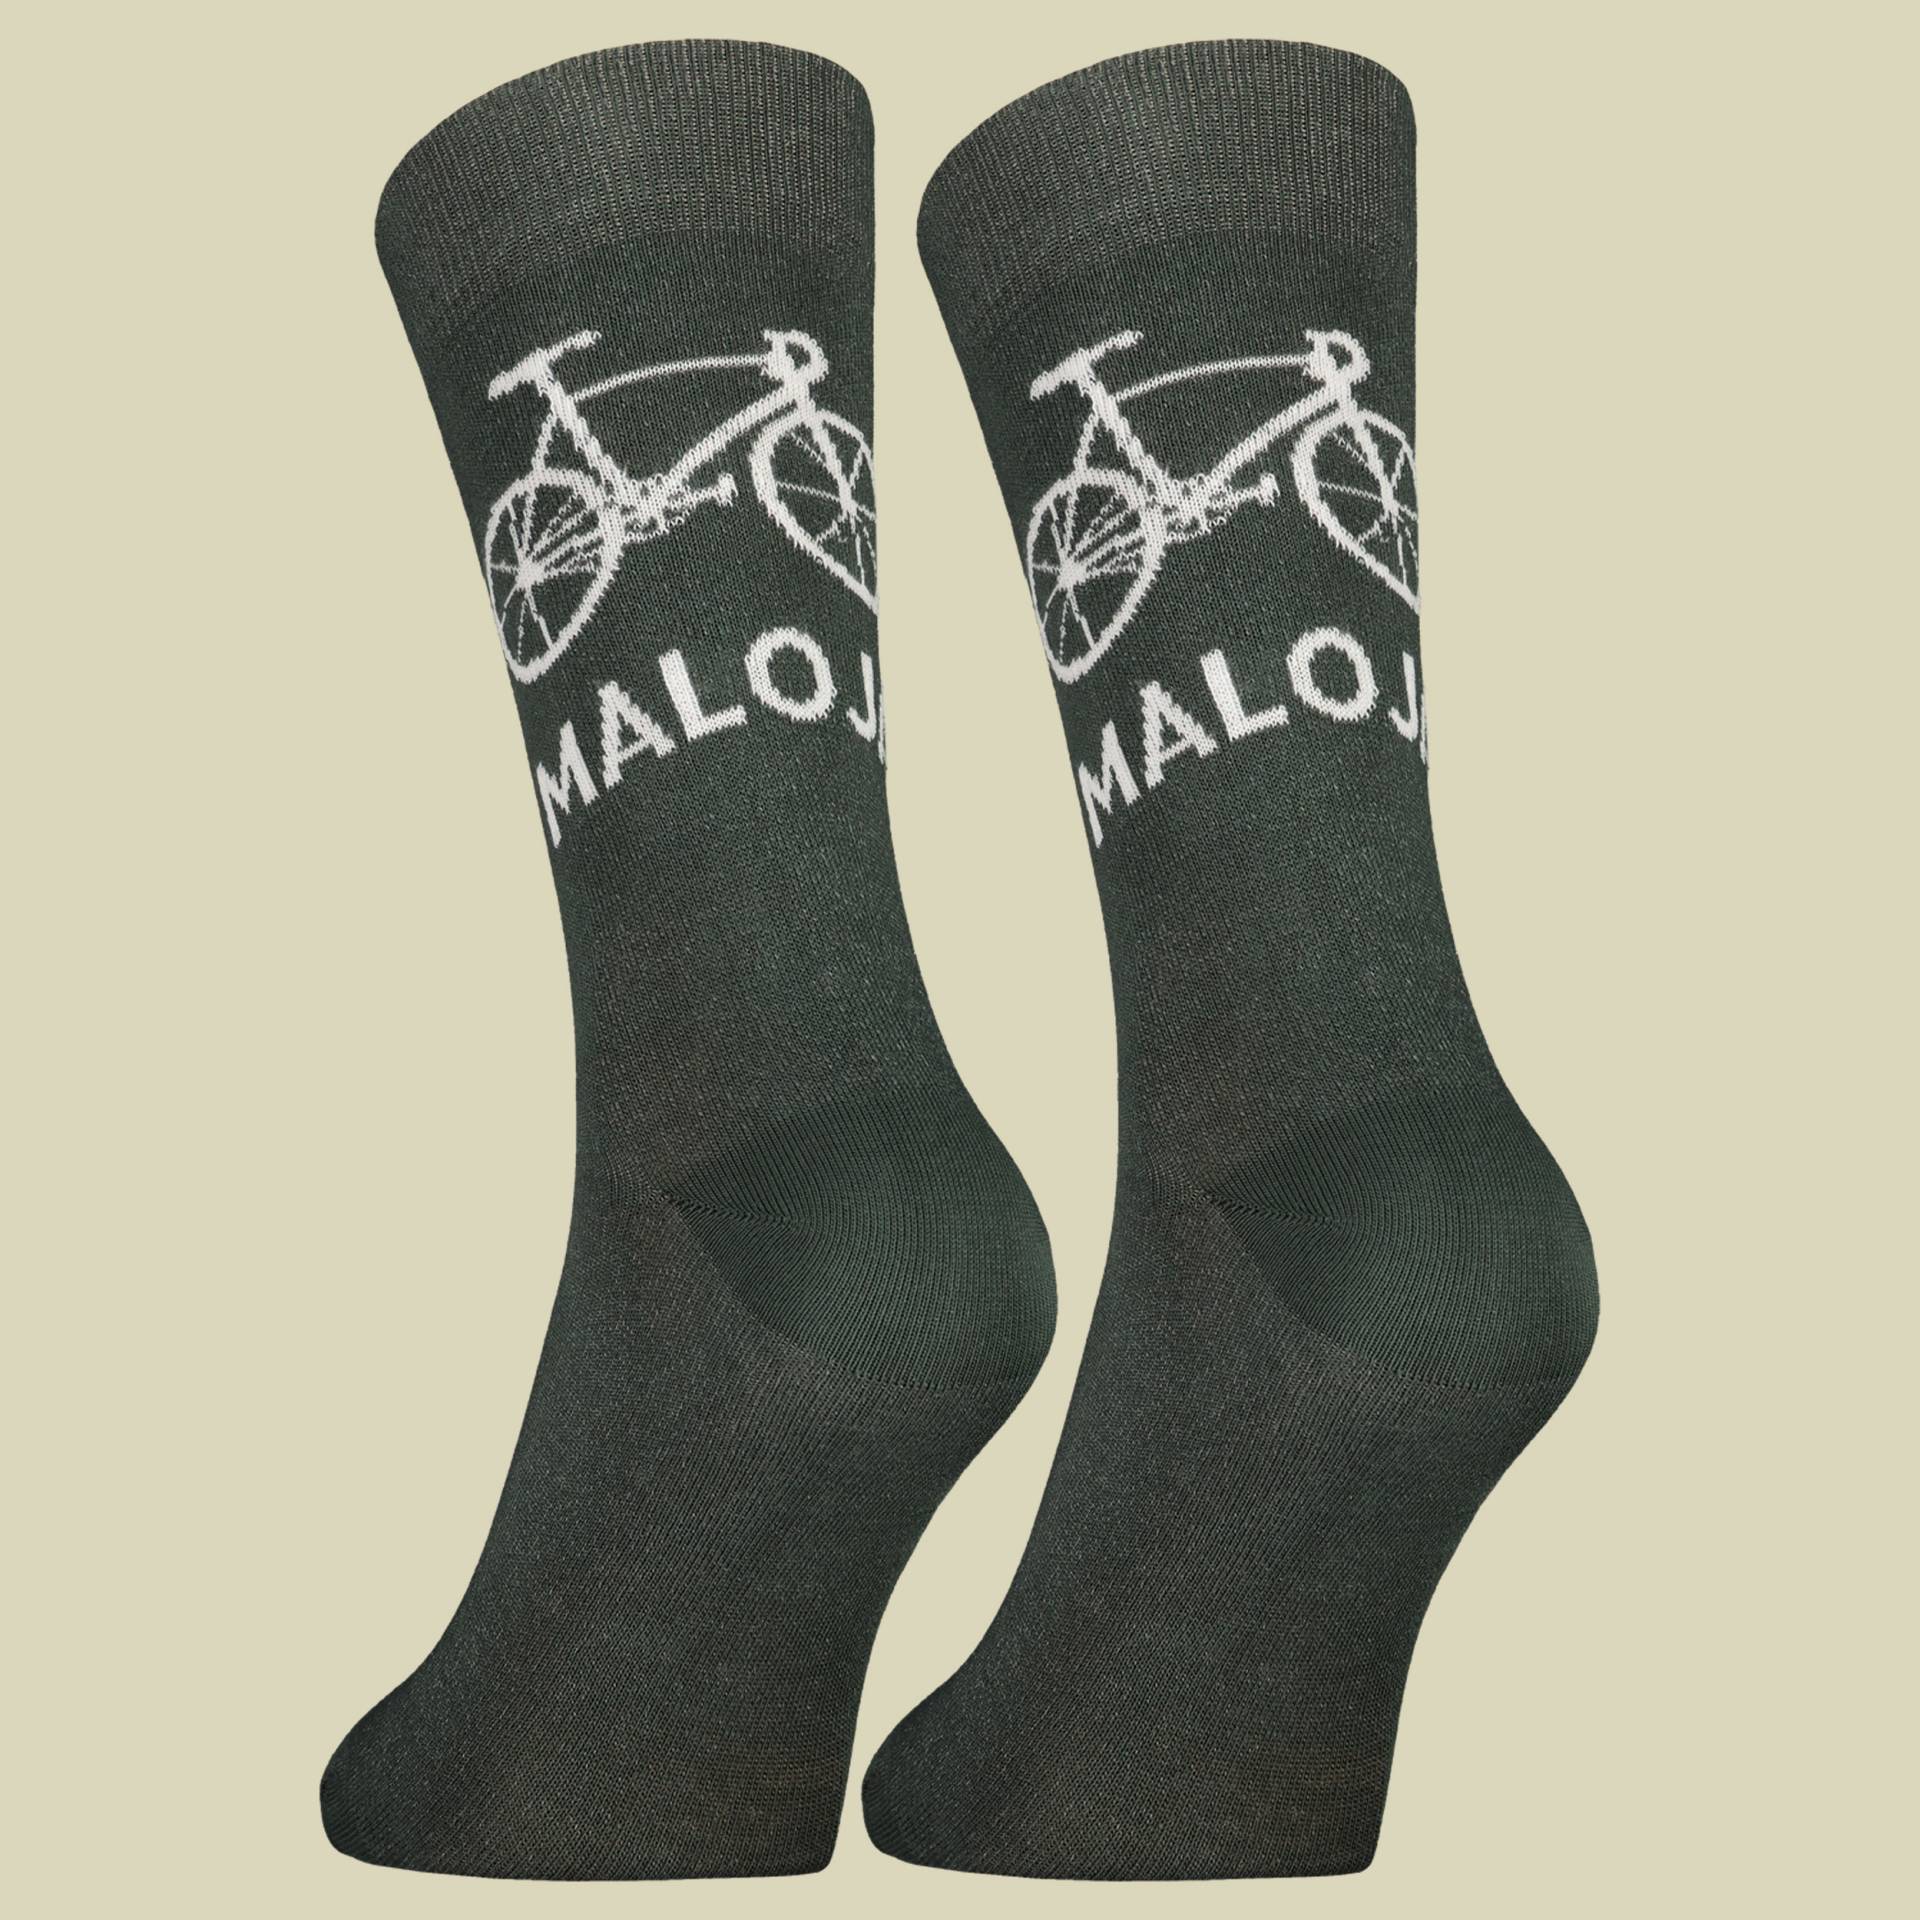 StalkM. Socks Men Größe 39-42 Farbe deep forest von Maloja